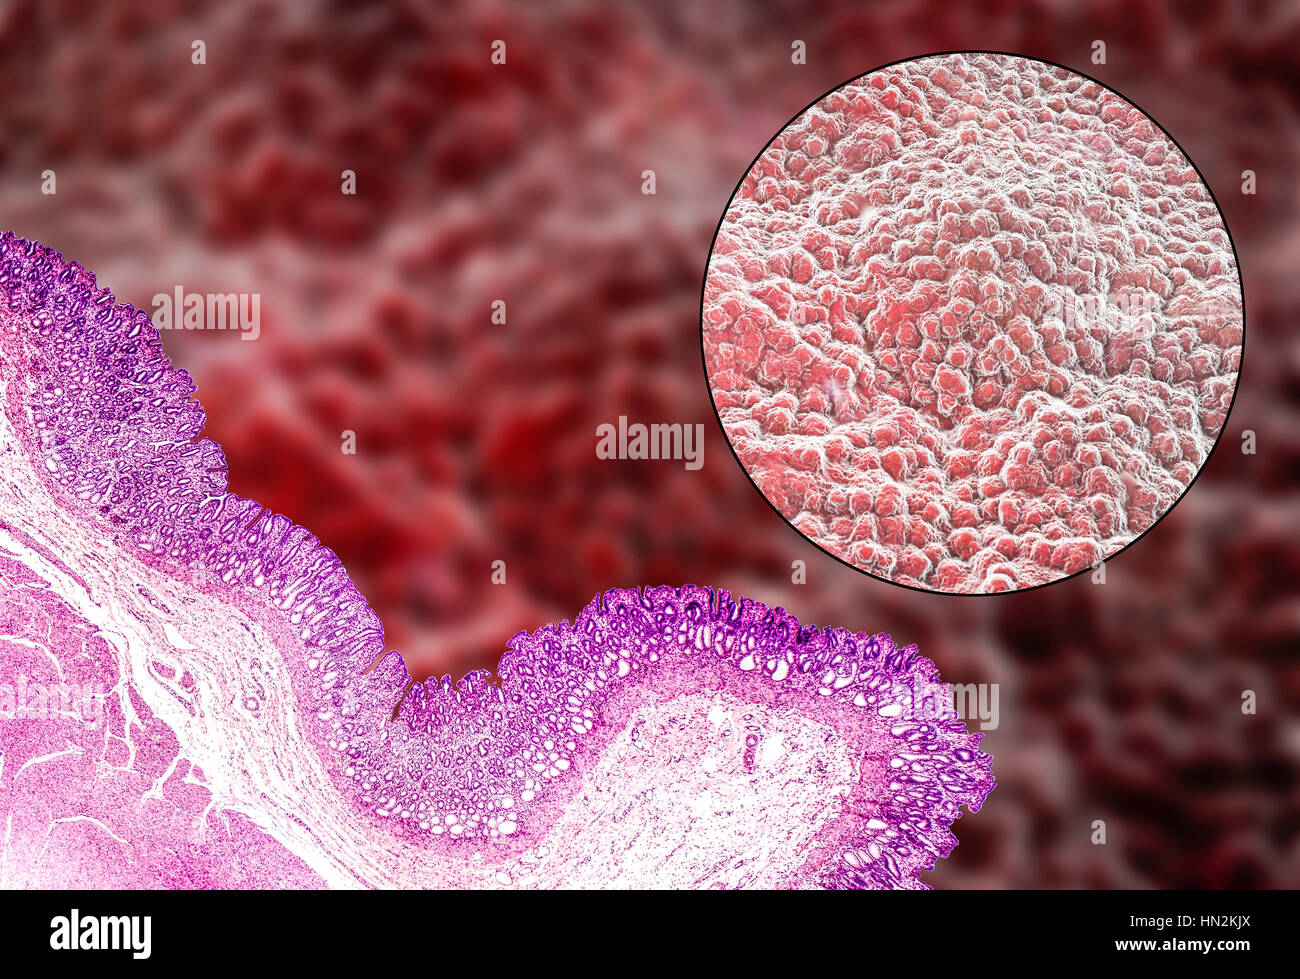 Magen-Schleimhaut. Leichte Schliffbild (unten links) und Computer Bild (oben rechts) von der Schleimhaut des Magens, bekannt als die Schleimhaut. Der Magen ist ein muskulöser Sac Lagerung und Verdauung der Nahrung beteiligt. Die Oberfläche der Schleimhaut besteht aus einfachen säulenartigen Zellen (dunkelviolett im Schliffbild), die Schleim absondern. Der Schleim schützt die Magenschleimhaut vor Verdauung Säuren und Enzyme, die auf Nahrung im Magen wirken. Unter die säulenartigen Zellen sind gastrische Gruben, die Drüsen, aus denen die Säuren und Enzyme notwendig, um Nahrung zu verdauen. Stockfoto